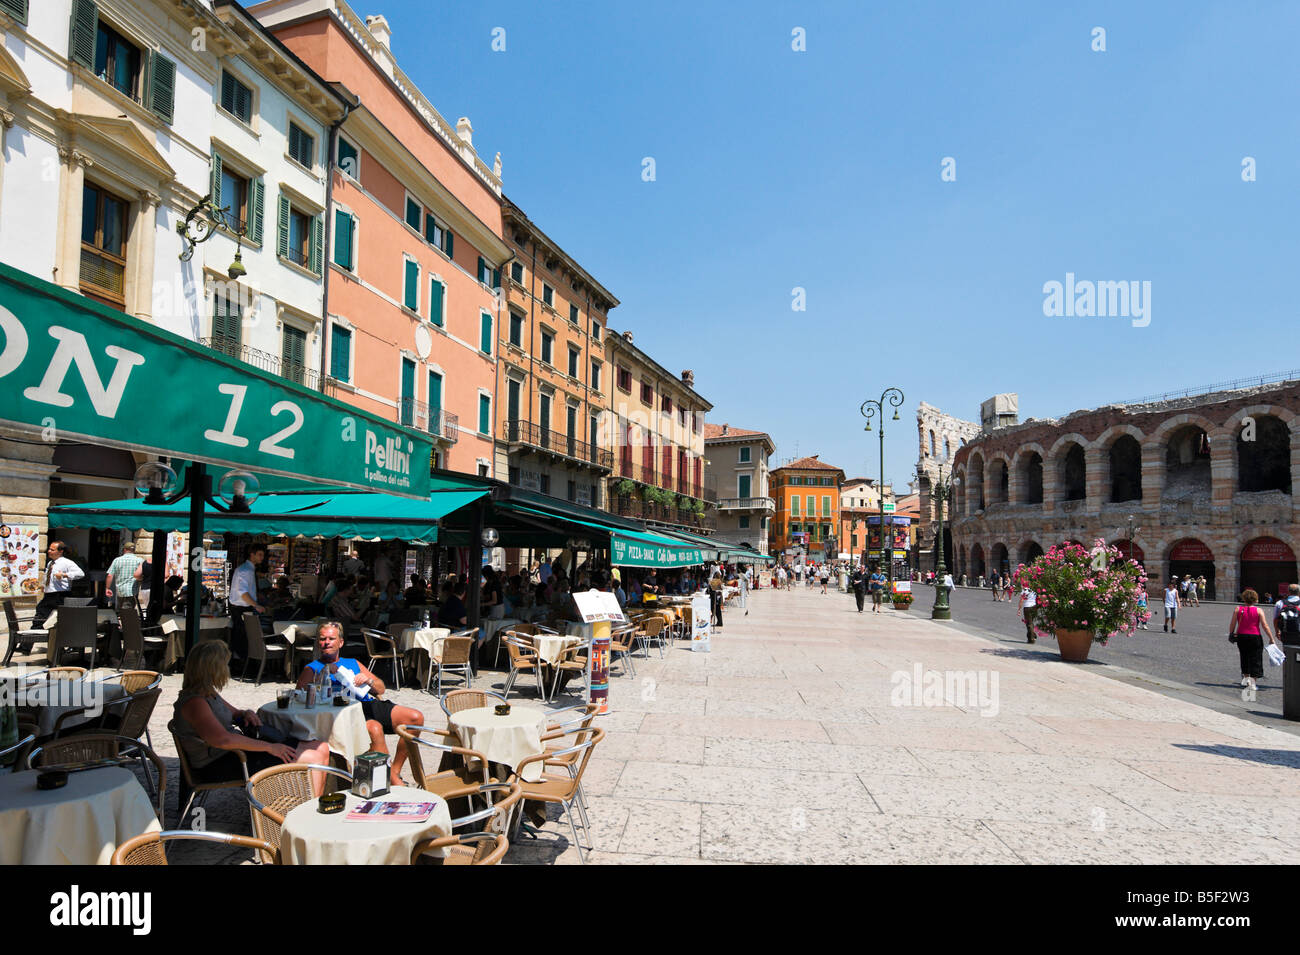 Cafe di strada di fronte all'Arena (anfiteatro) in Piazza Bra, Verona, Veneto, Italia Foto Stock